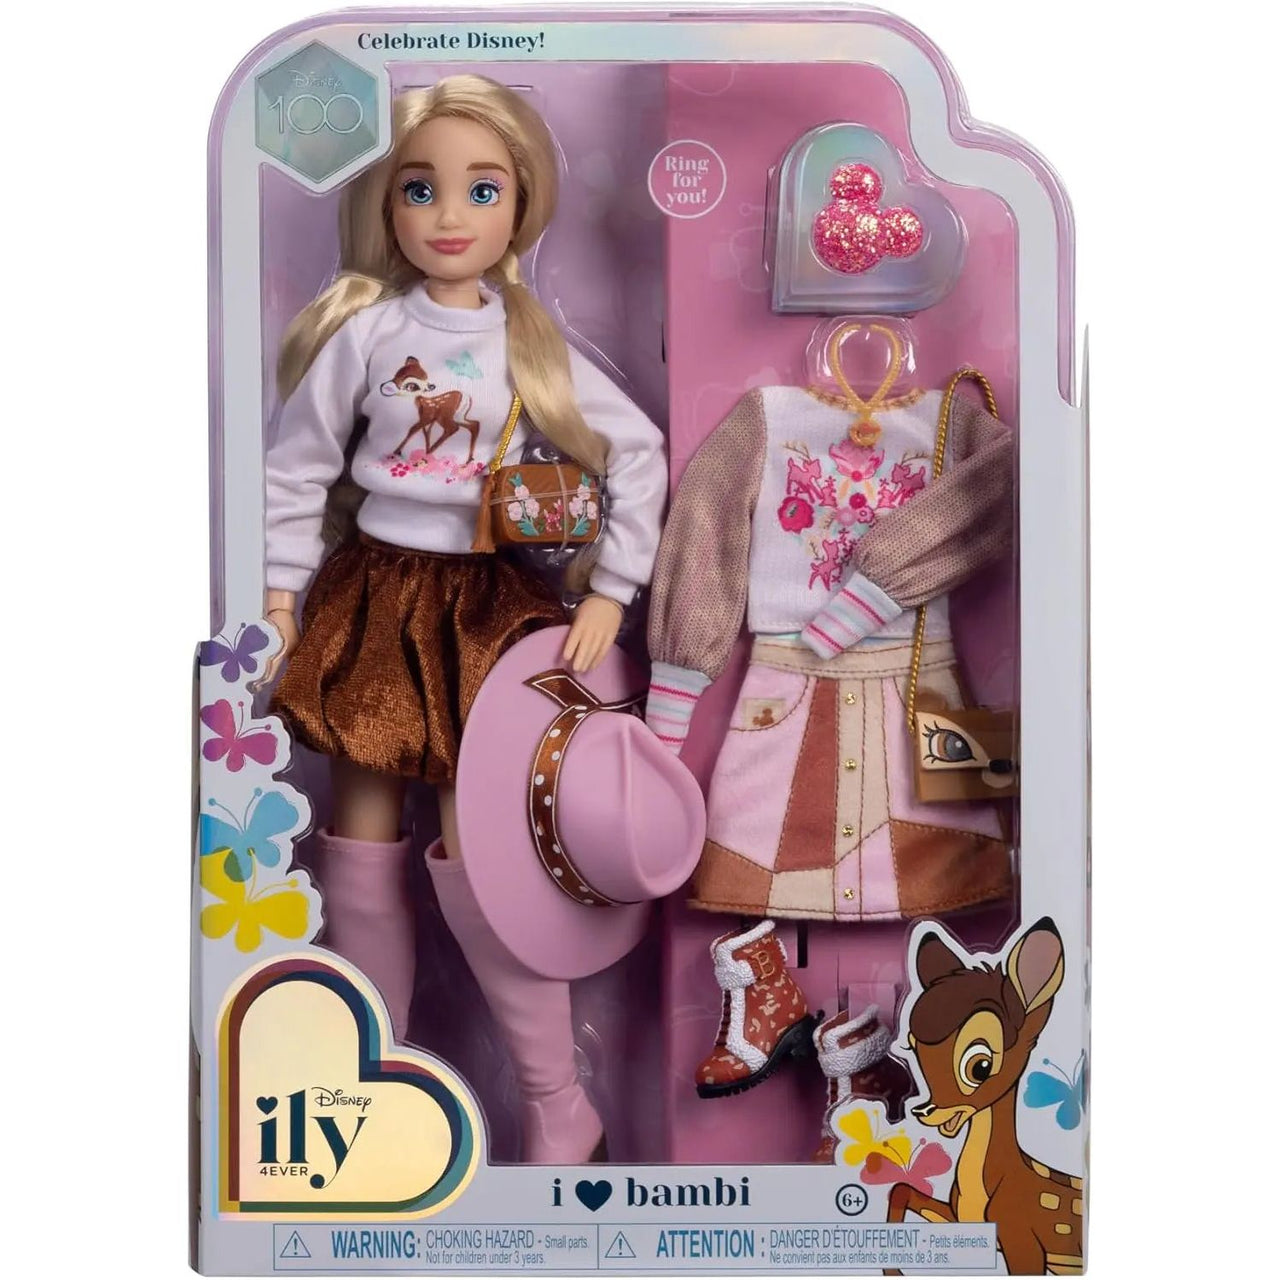 Disney ily 4ever Bambi Fashion Doll Disney